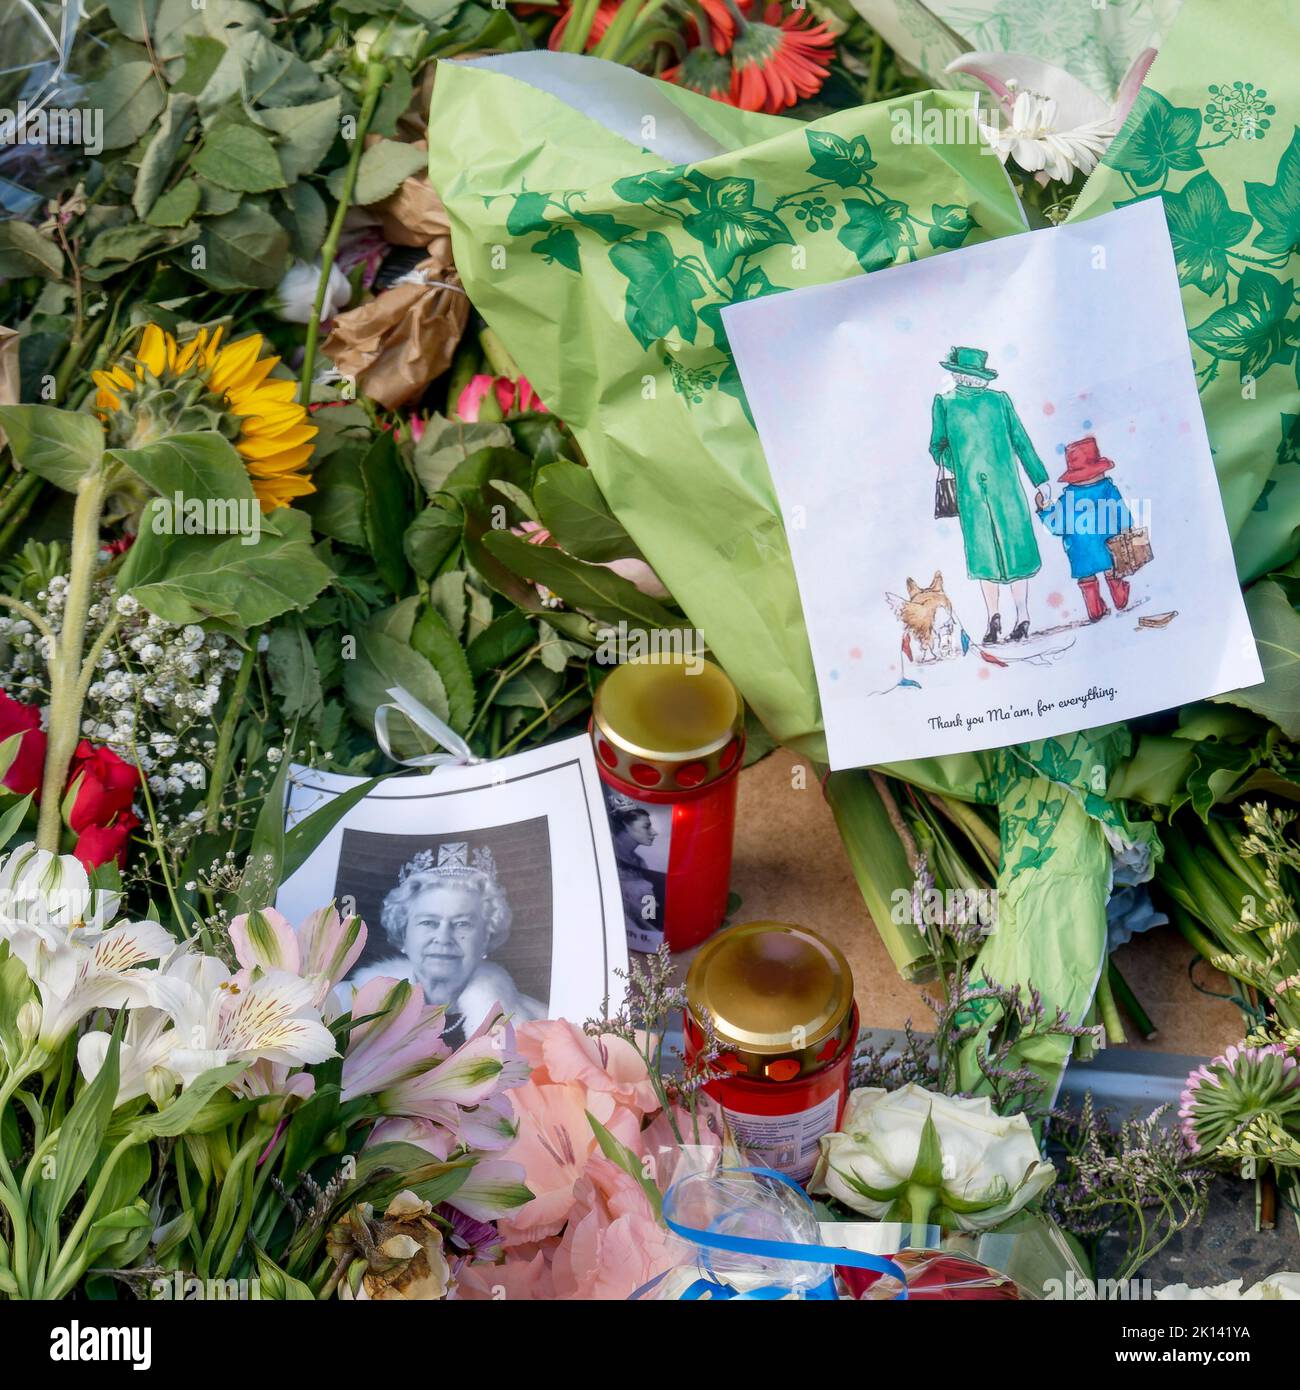 Beileidsbekundungen zum Tod von Königin Elizabeth II der Queen em 08.09.2022. Blumen und Kerzen werden vor der britischen Botschaft in Berlin abge Foto Stock